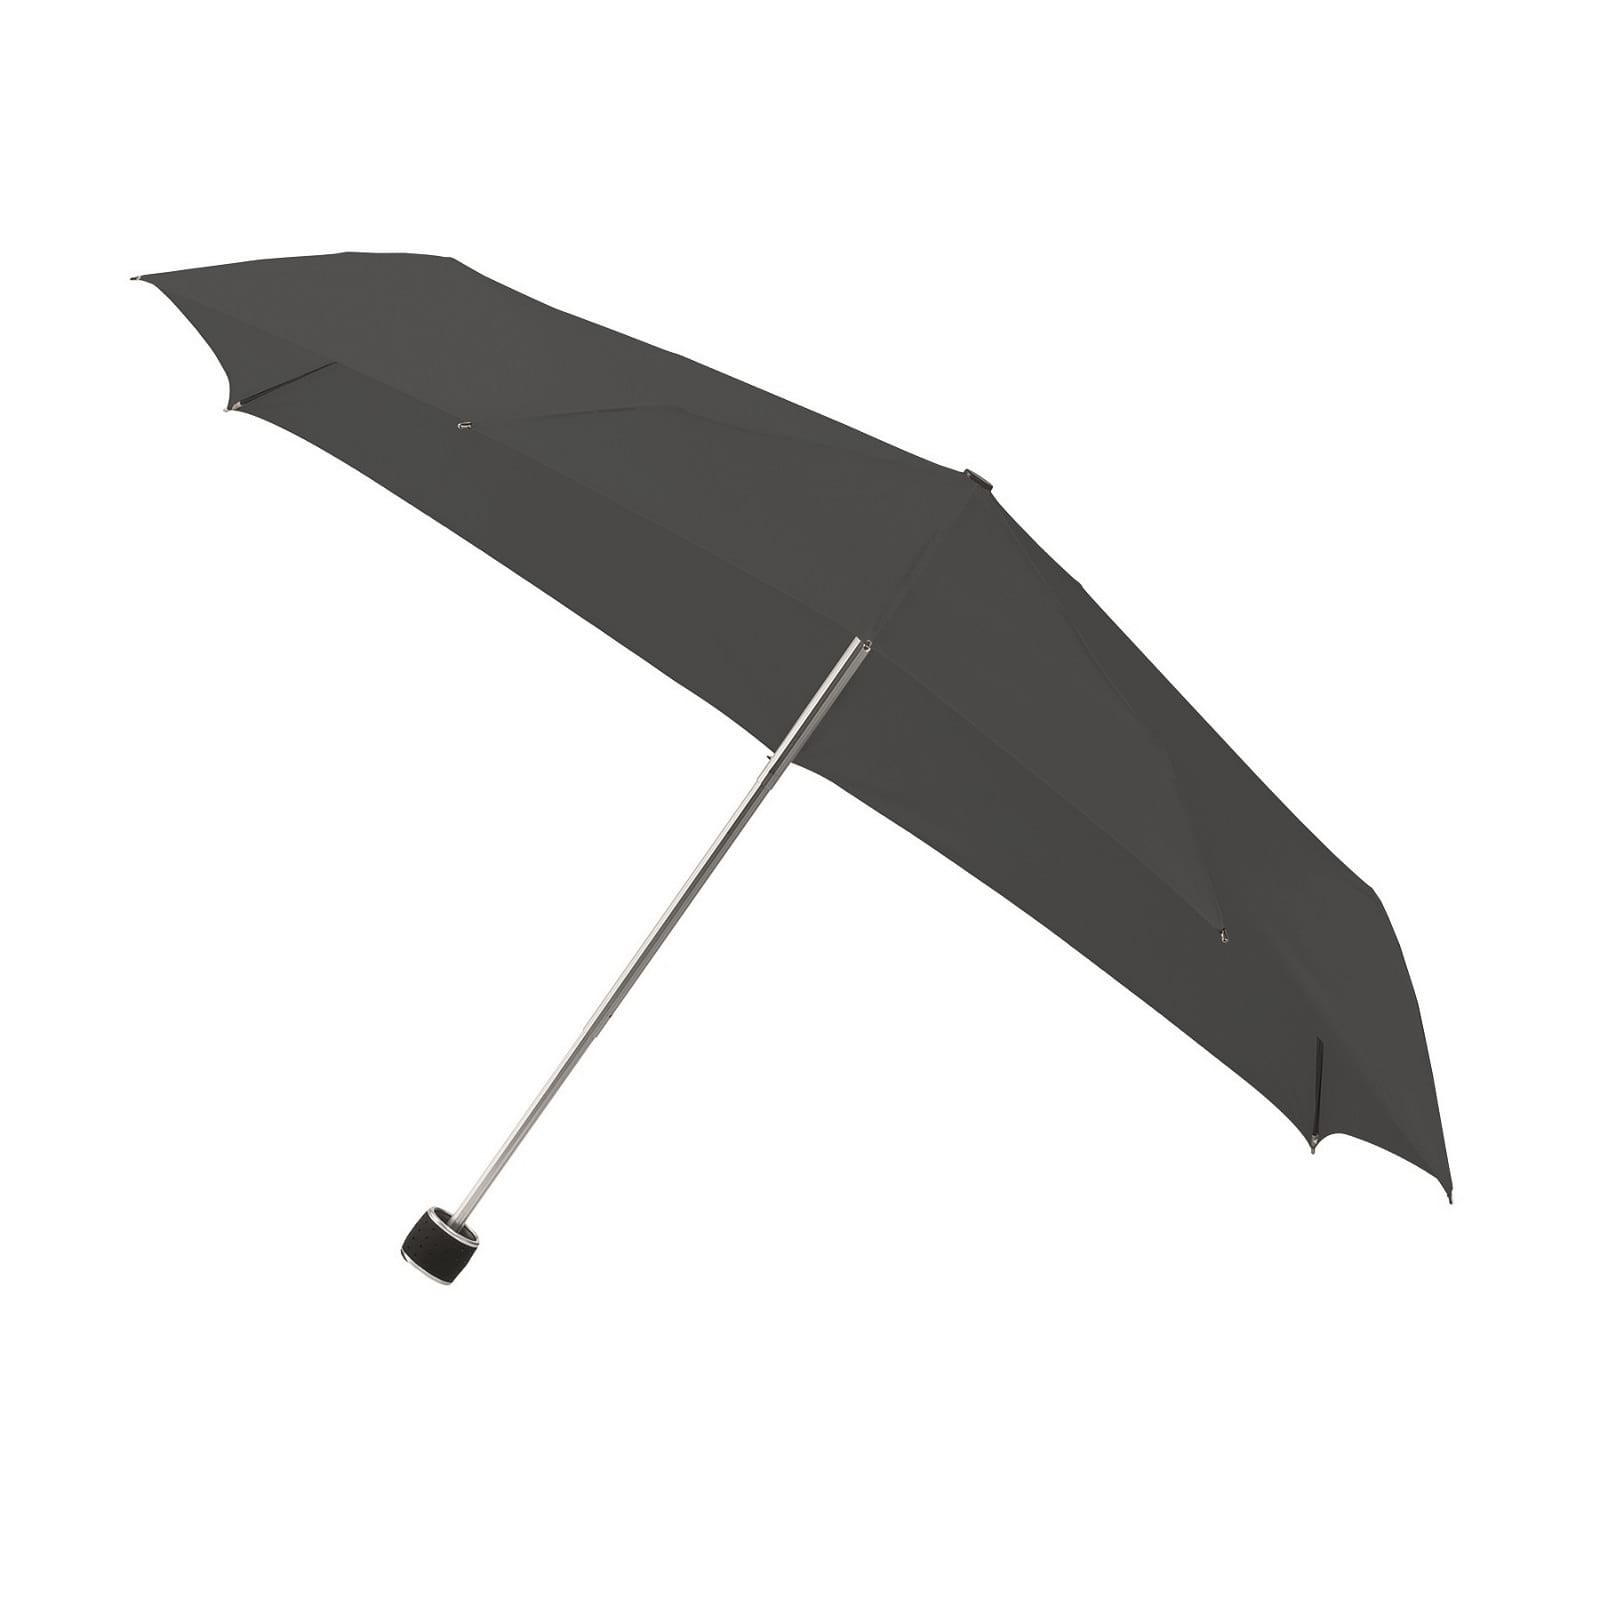 Pedagogie Opname Een zin Impliva STORMini Folding Storm Umbrella Grey | Design Is This